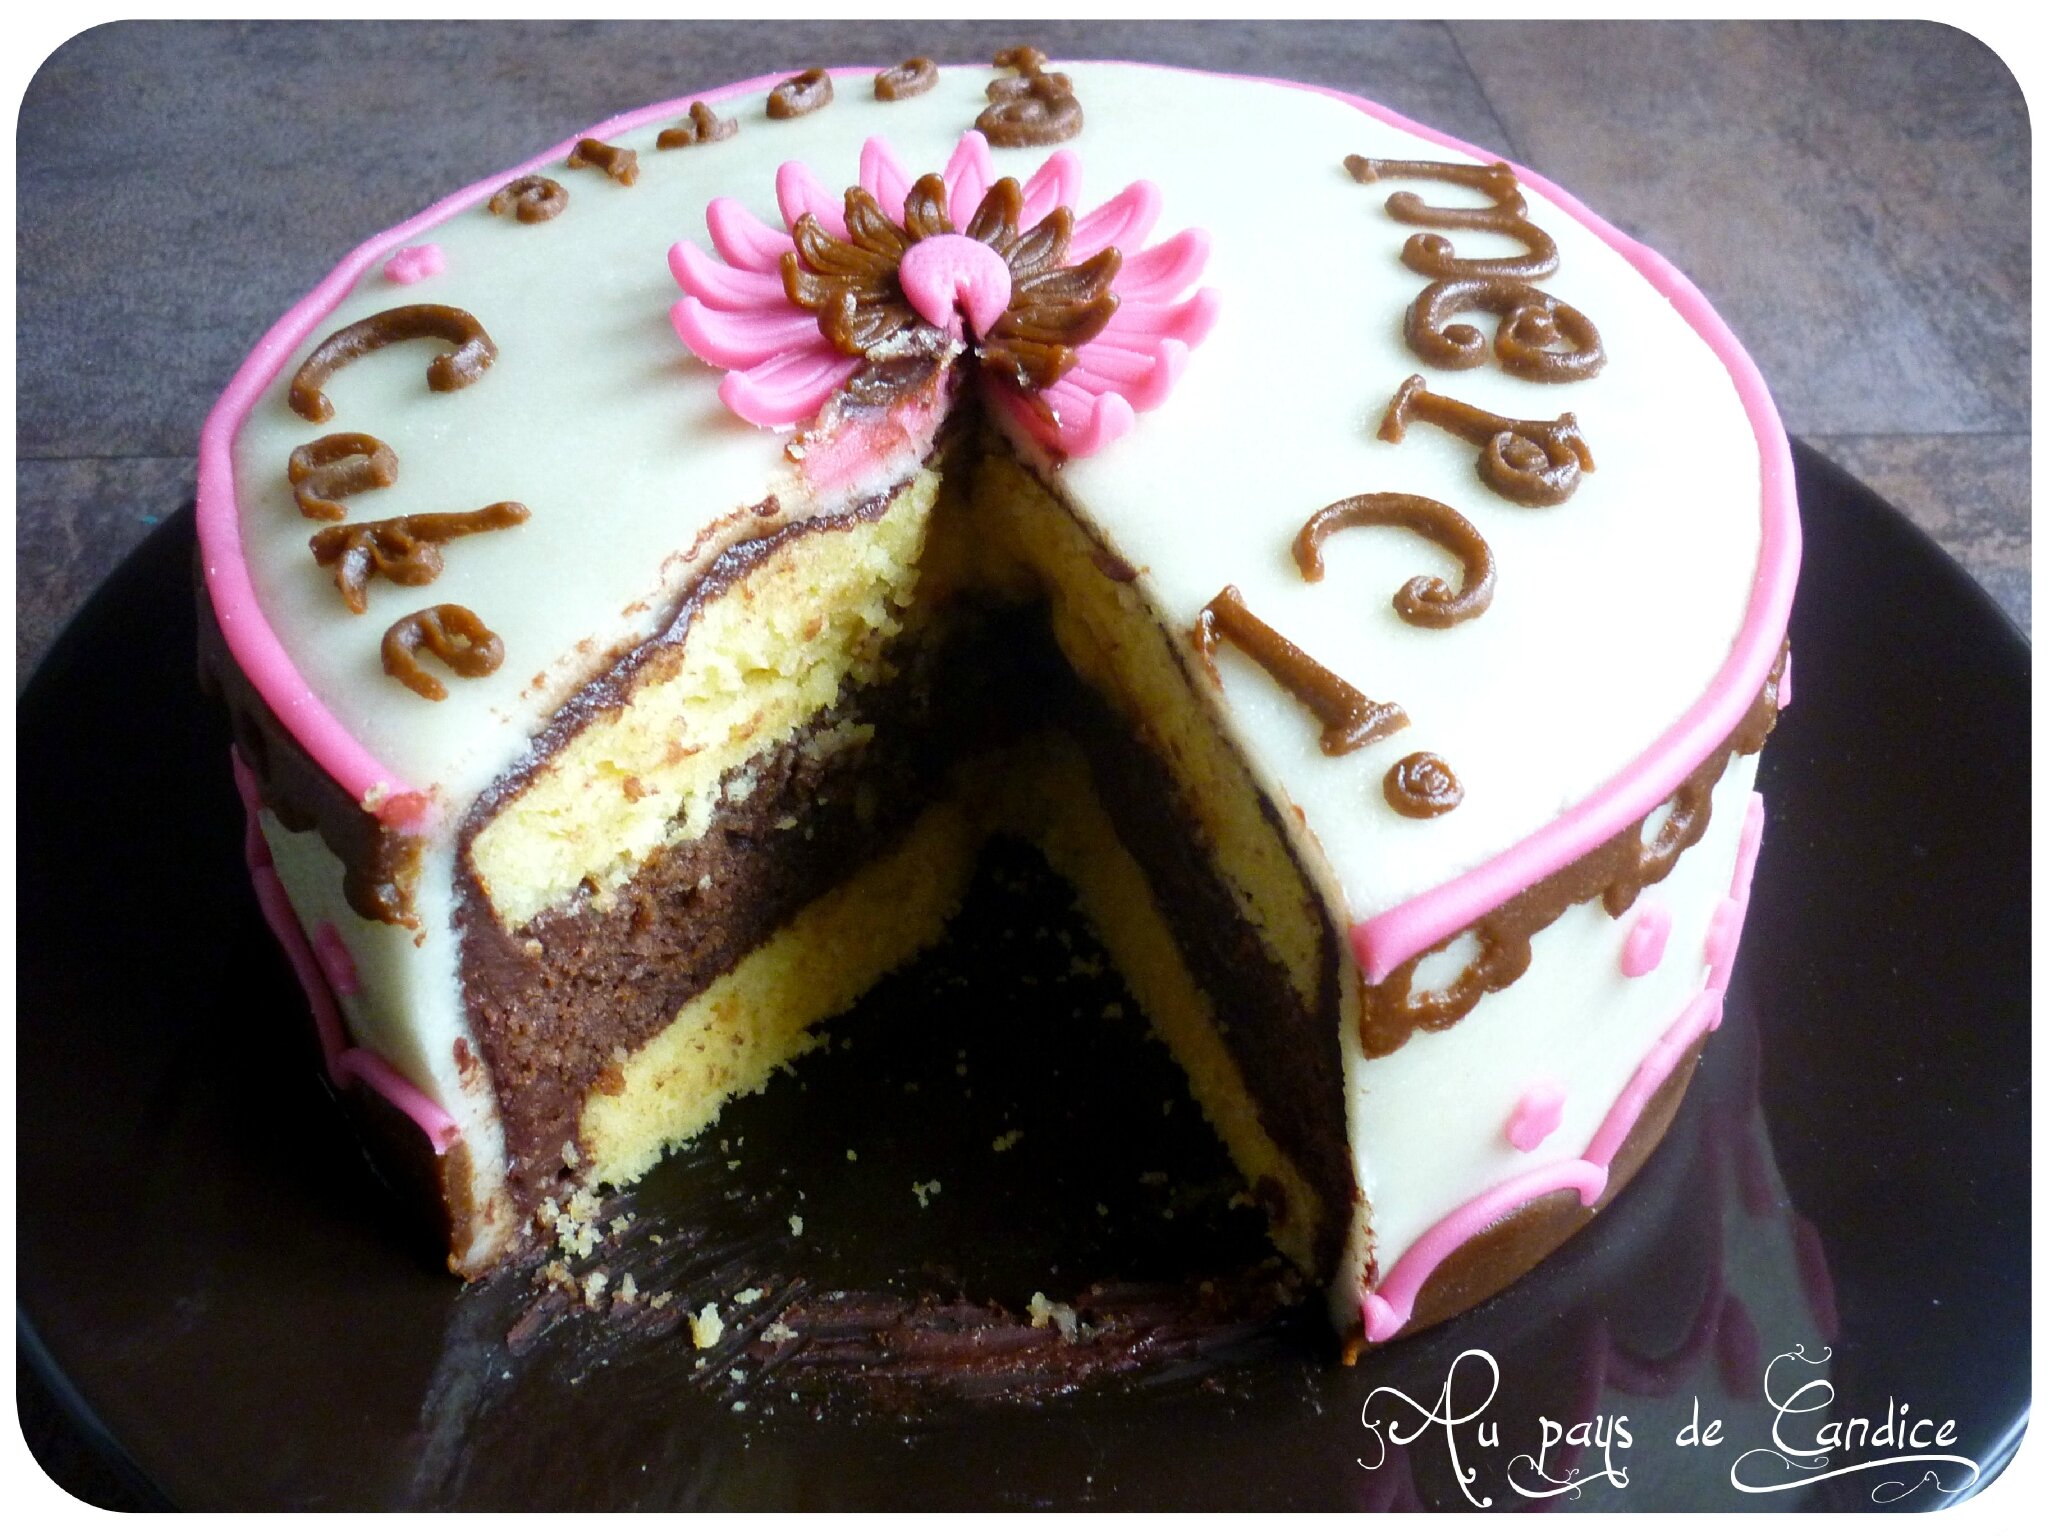 La décoration de gâteau avec des sprinkles - Féerie cake